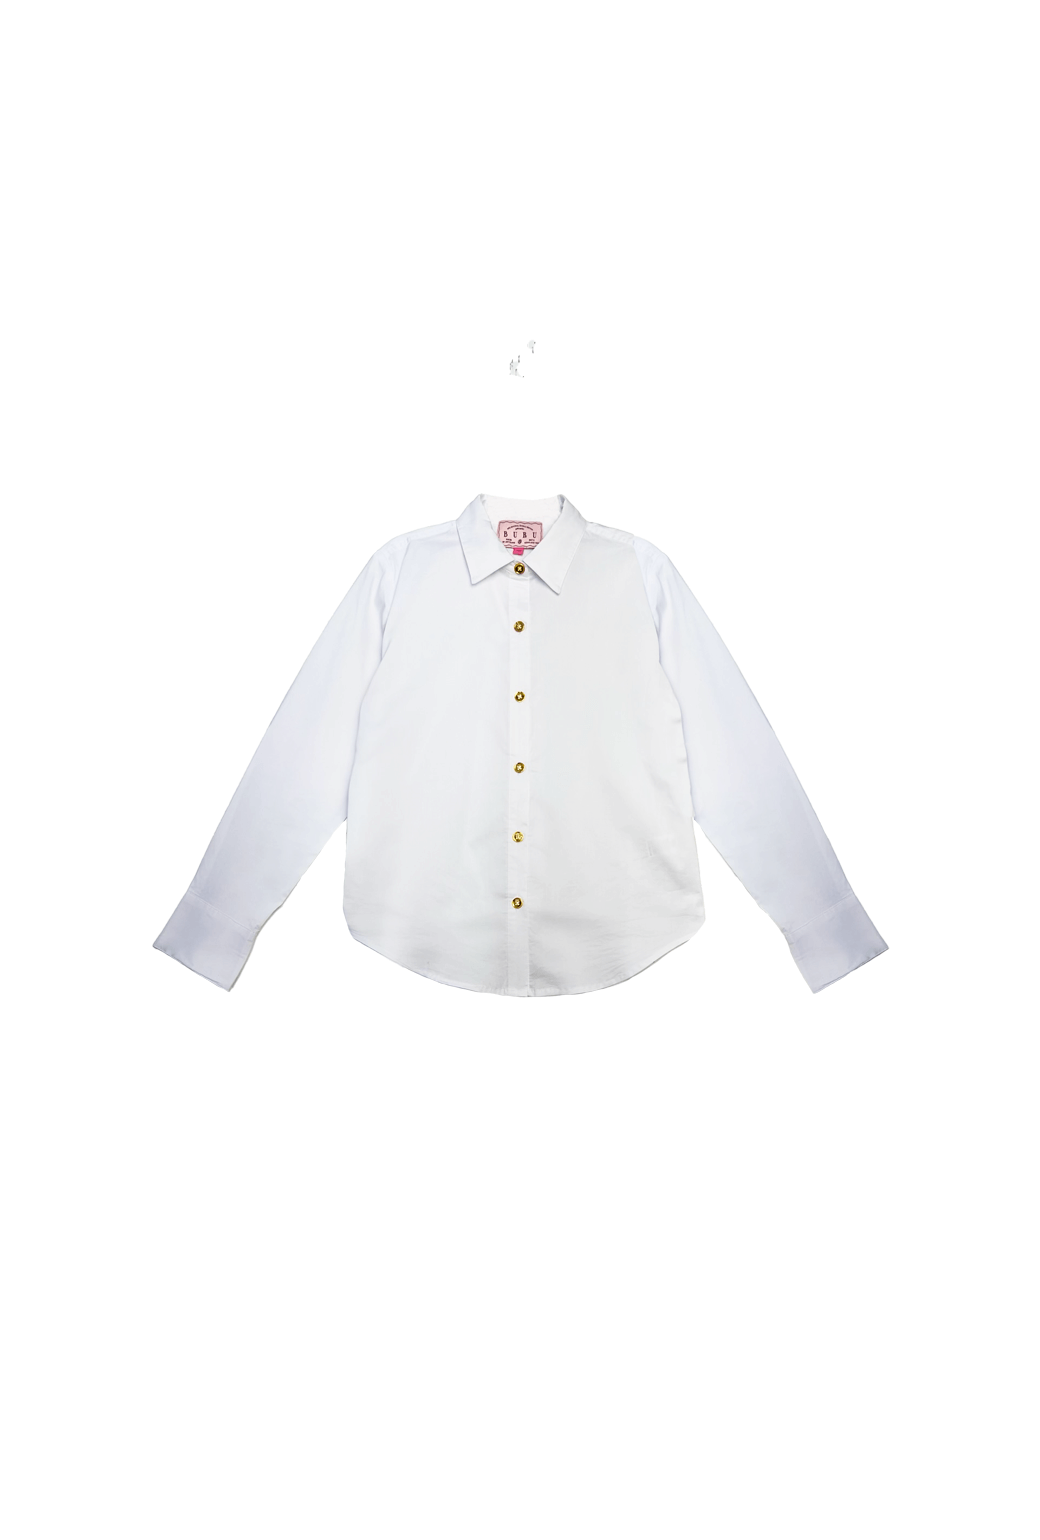 Mel Button Down Shirt - White